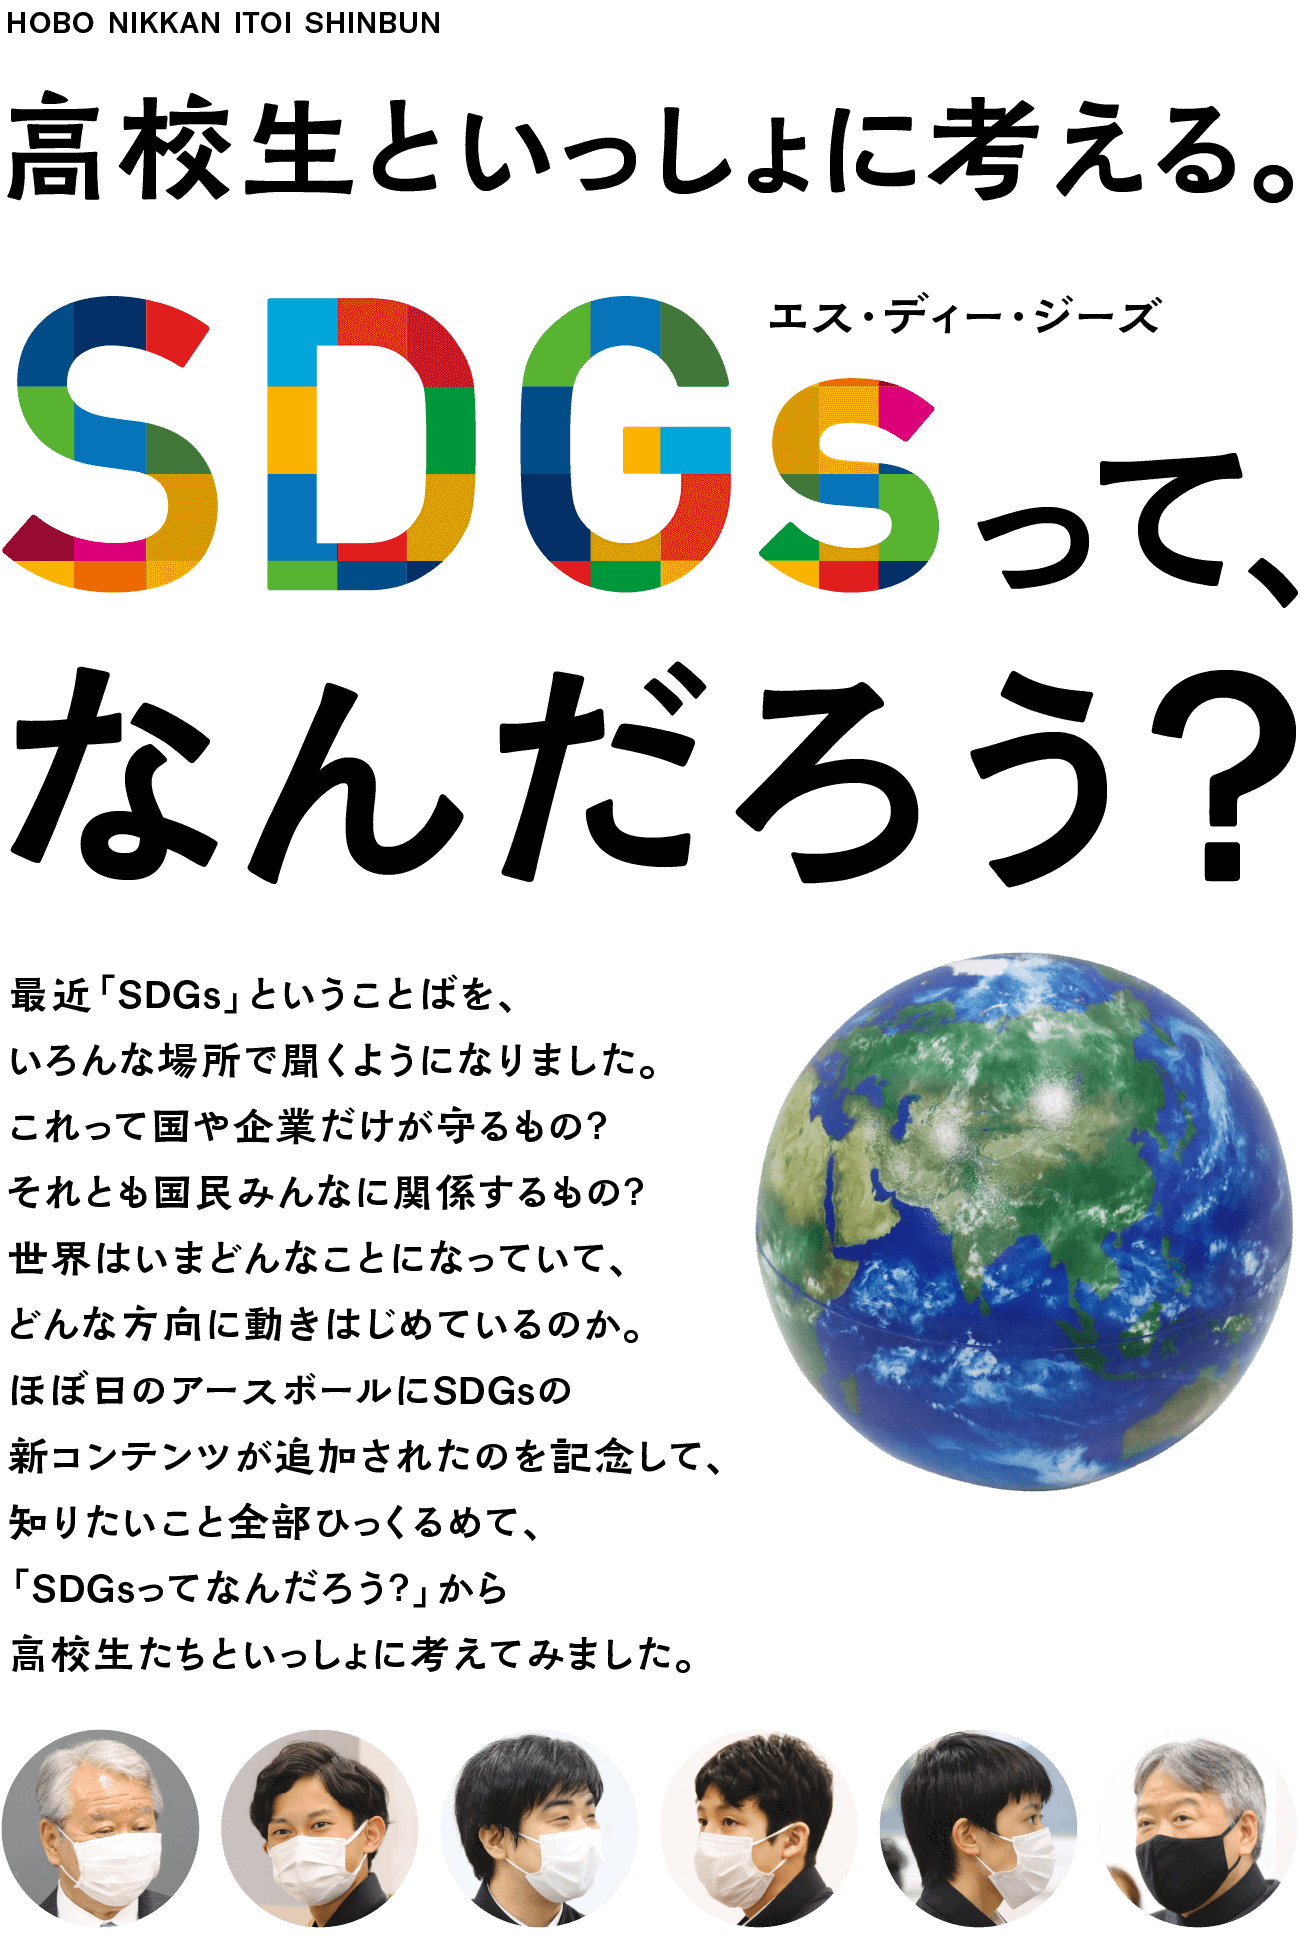 SDGsって、なんだろう？　最近「SDGs」ということばを、いろんな場所で聞くようになりました。これって国や企業だけが守るもの？　それとも国民みんなに関係するもの？　世界はいまどんなことになっていて、どんな方向に進もうとしていて、日本にいるぼくらは何をするべきなのか。知りたいこと全部ひっくるめて、「SDGsってなんだろう？」から高校生たちといっしょに考えてみました。